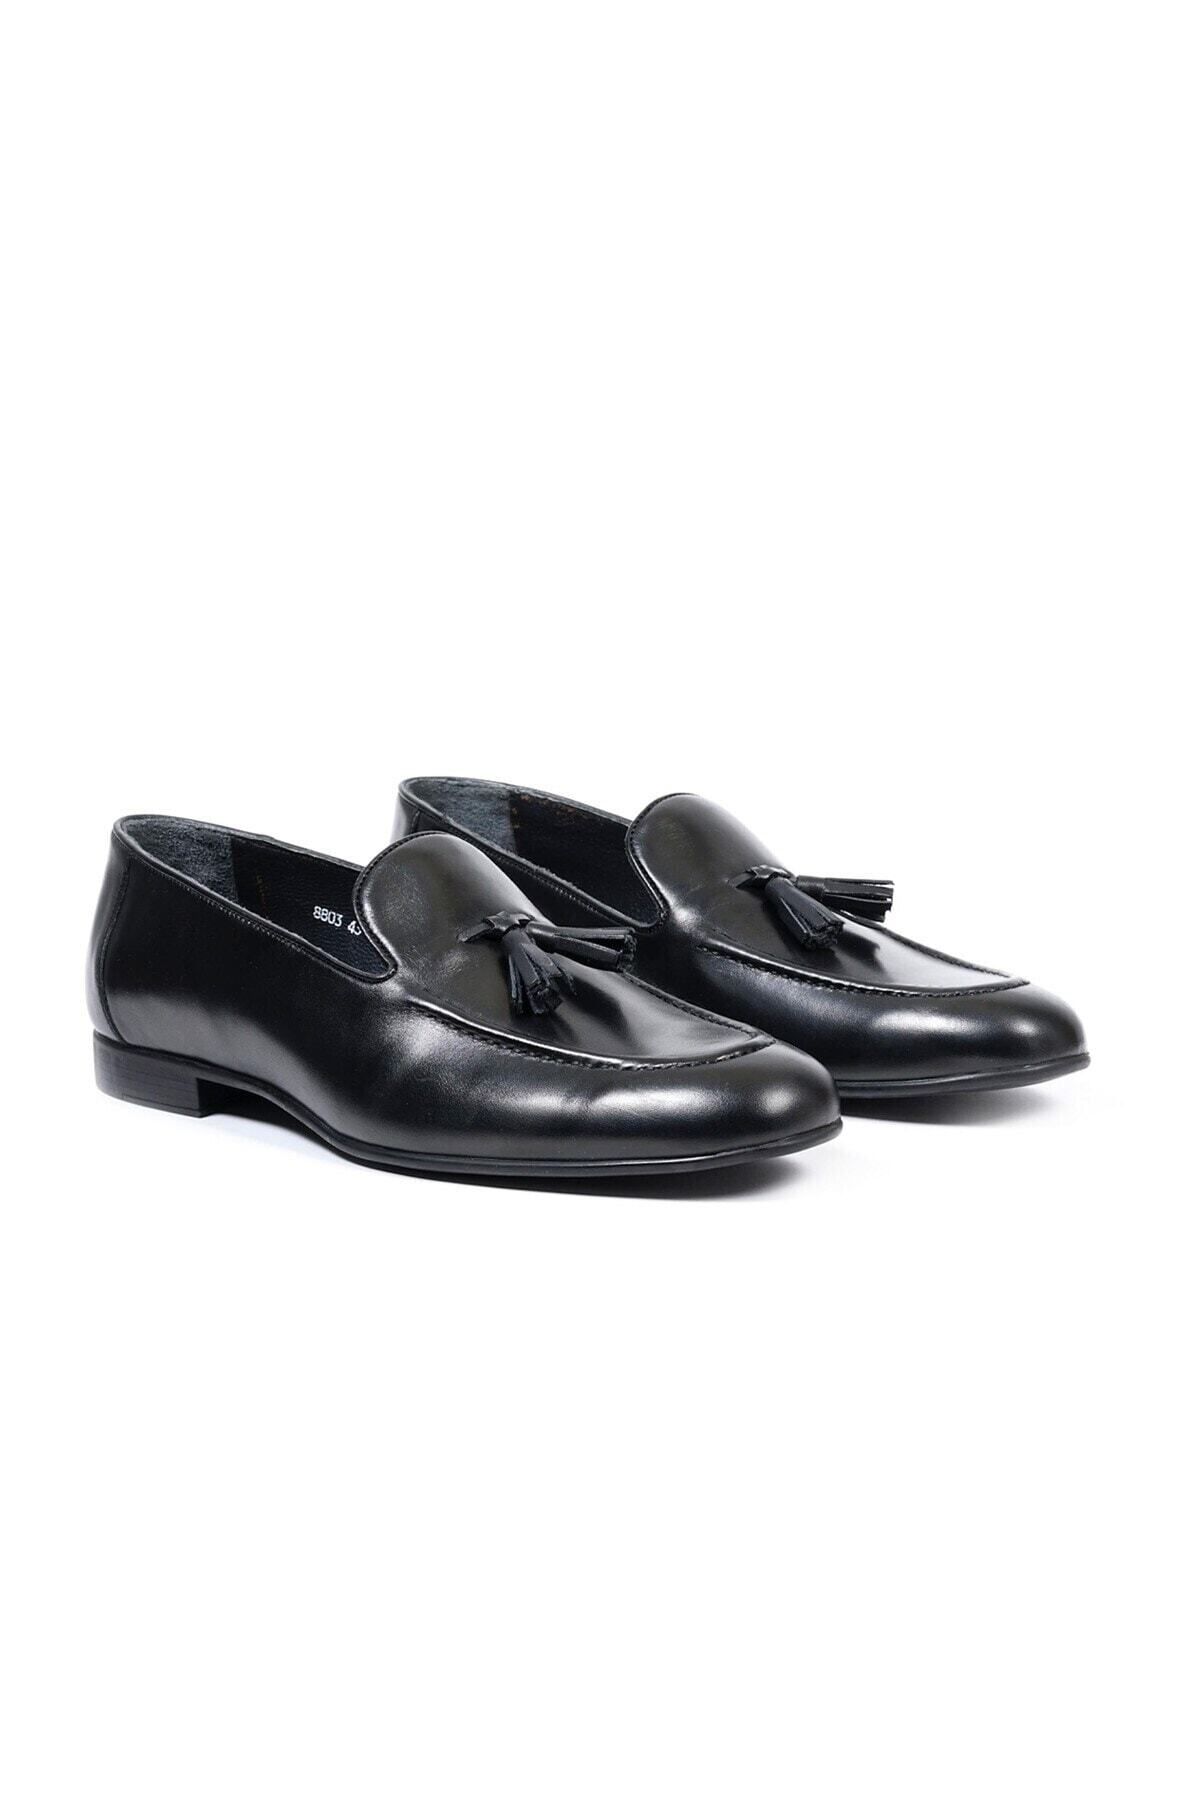 TEZCAN KUNDURA Seranad Hakiki Deri Siyah Bağcıksız Klasik Erkek Ayakkabı